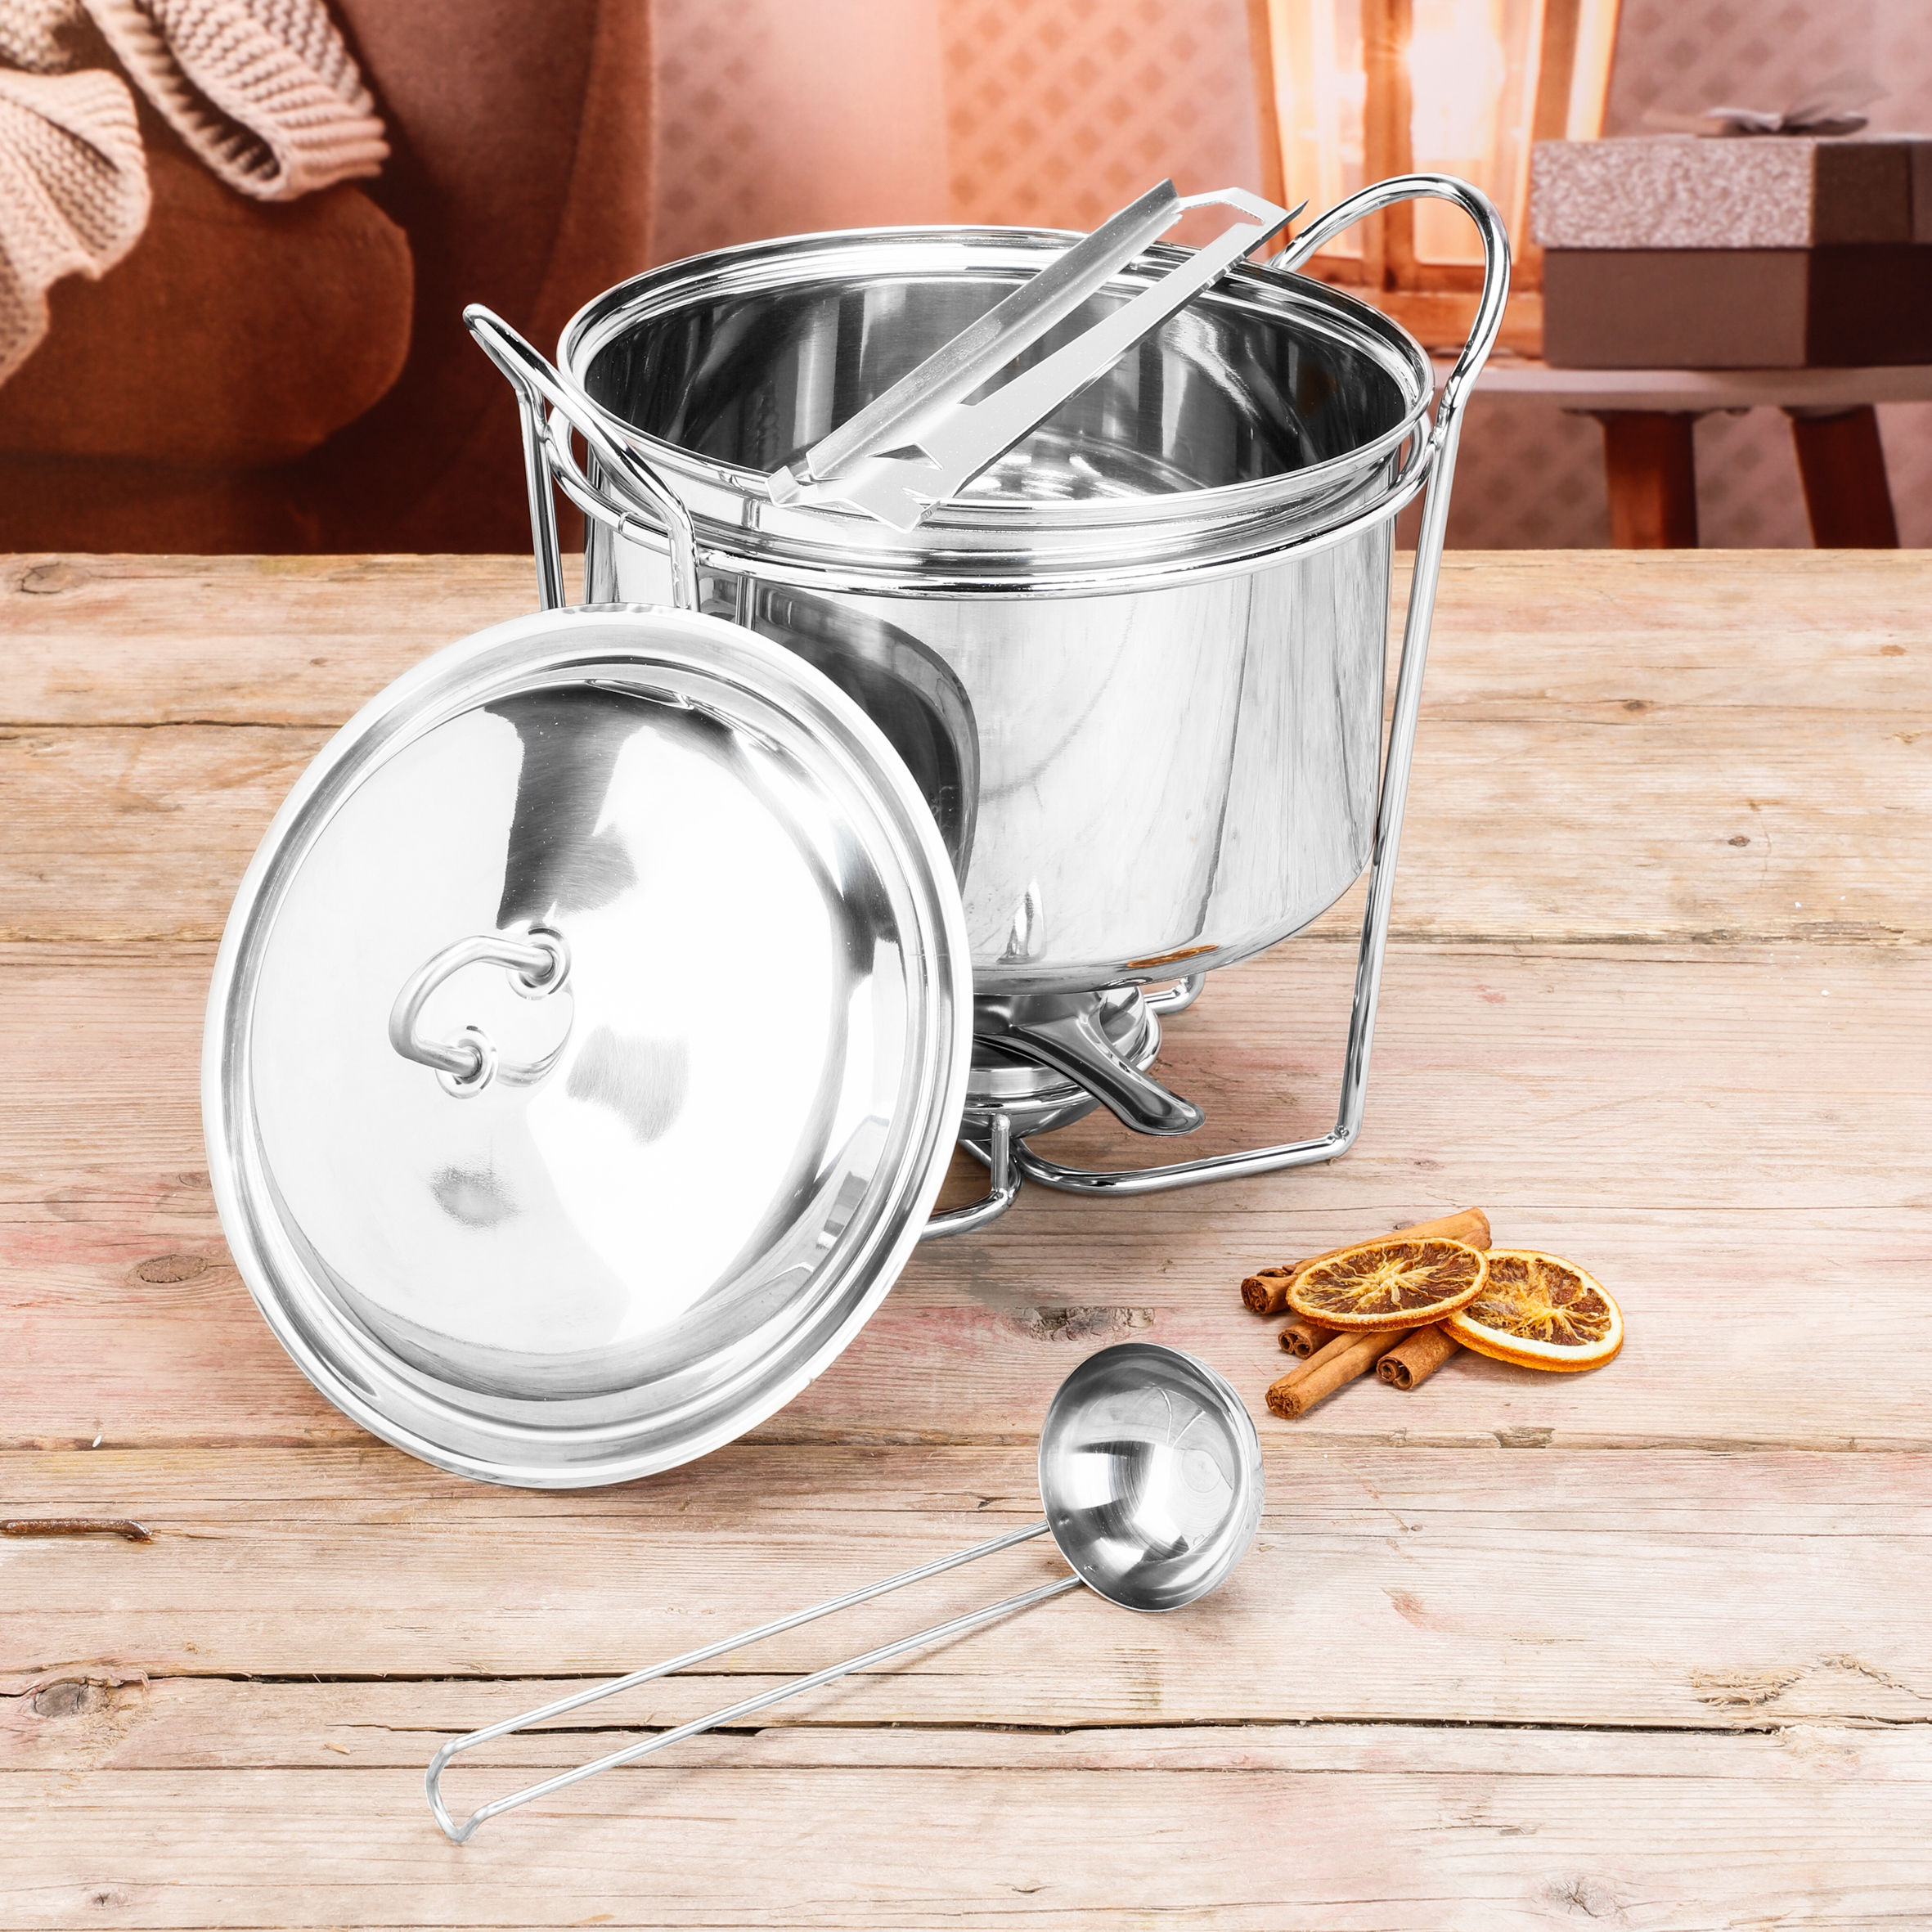 Feuerzangenbowle Set aus Edelstahl 3,5 Liter - 5-teilig - Punsch Bowle Gefäß Komplettset mit Pastenbrenner 